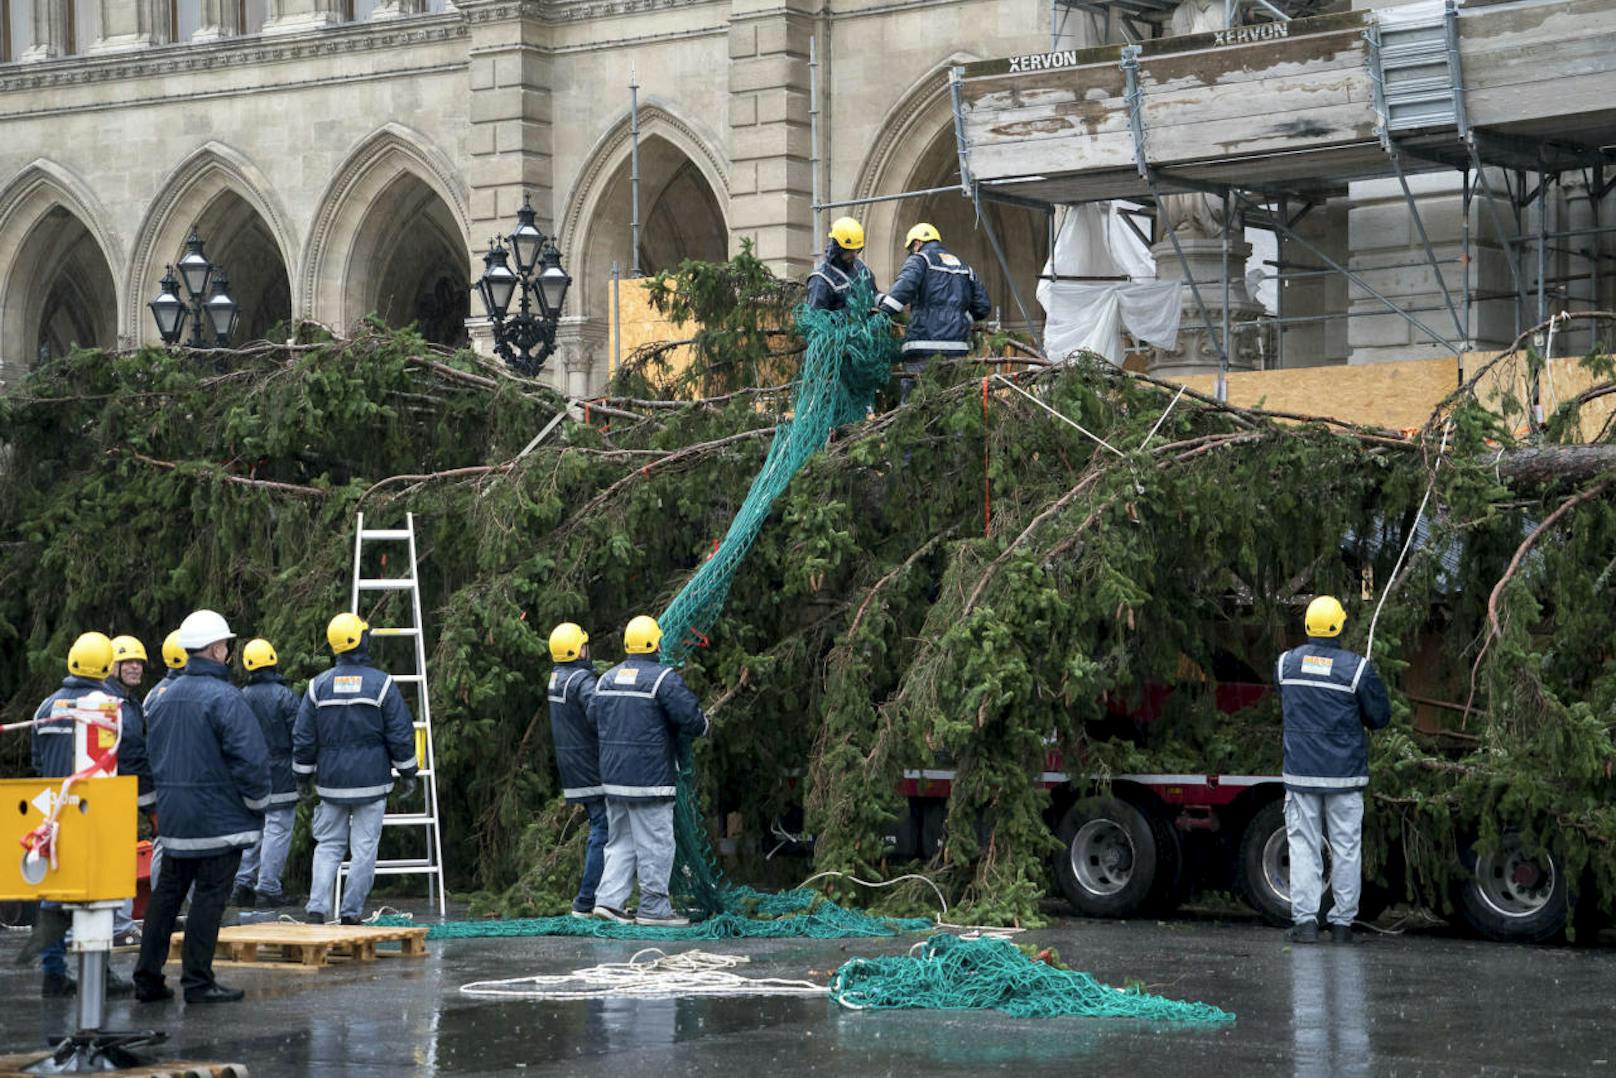 Der Christbaum wurde am Dienstagvormittag am Wiener Rathausplatz aufgestellt. 